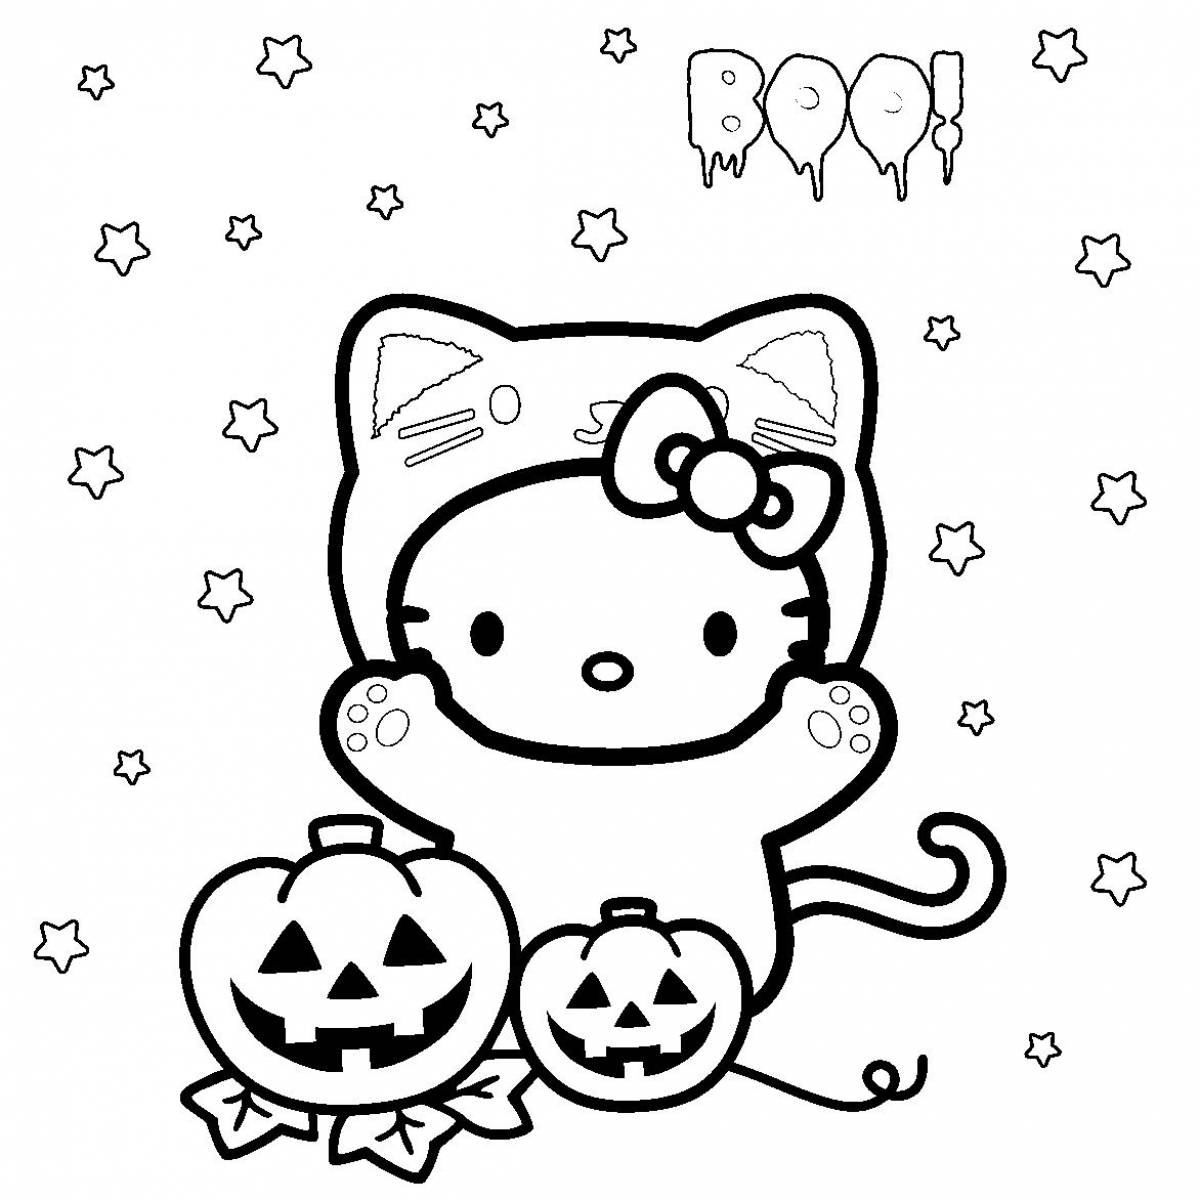 Astro kitty #8